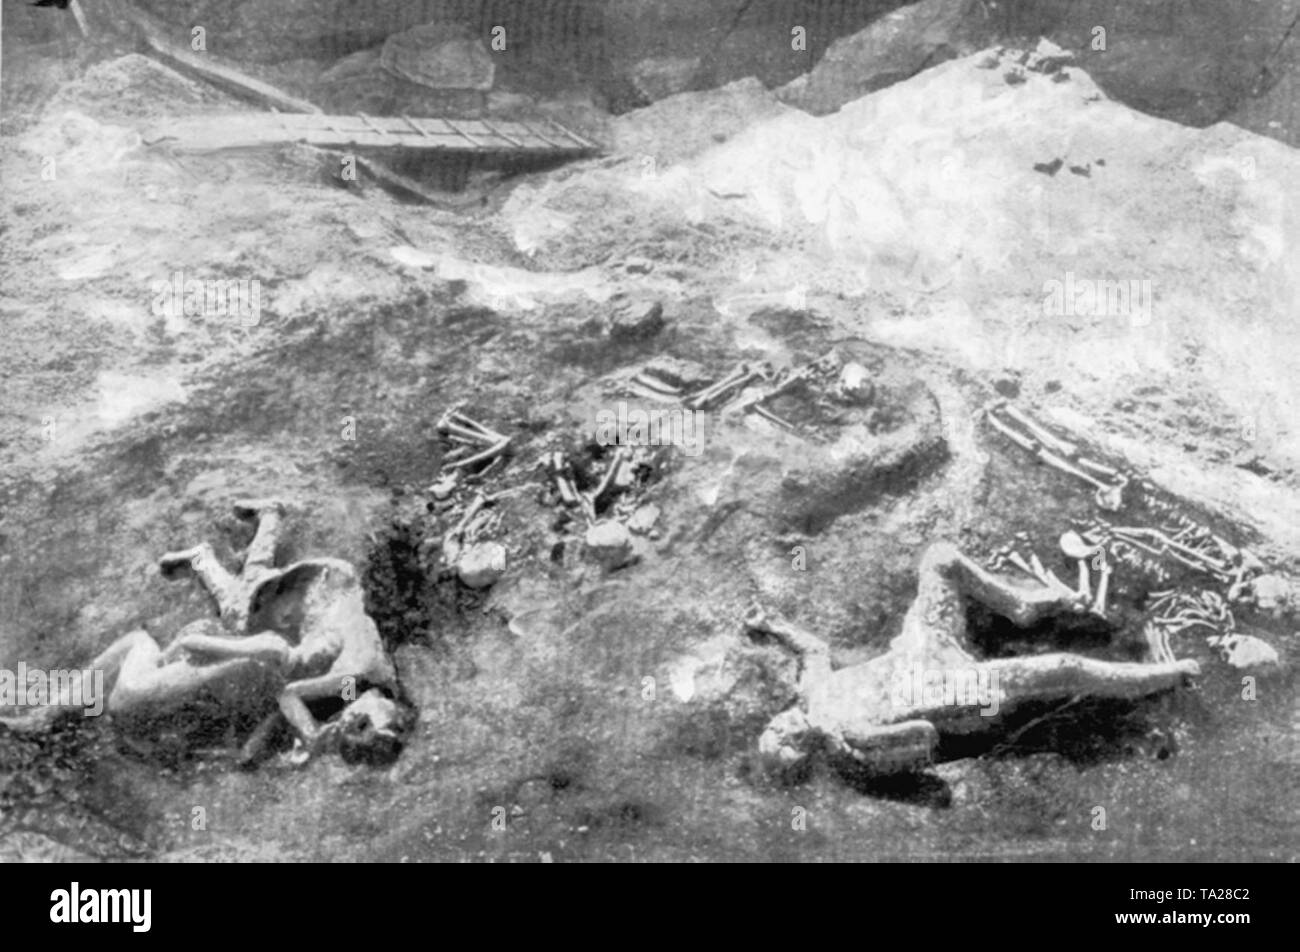 Pompeya fue destruida y enterrada bajo la ceniza y piedra pómez en la erupción del Monte Vesubio en el año 79 D.C. La mayoría de los aproximadamente 10.000 habitantes murieron. Muchas de las víctimas fueron encontrados conservados por ceniza volcánica, como fueron sorprendidos por la catástrofe sobre la marcha Foto de stock